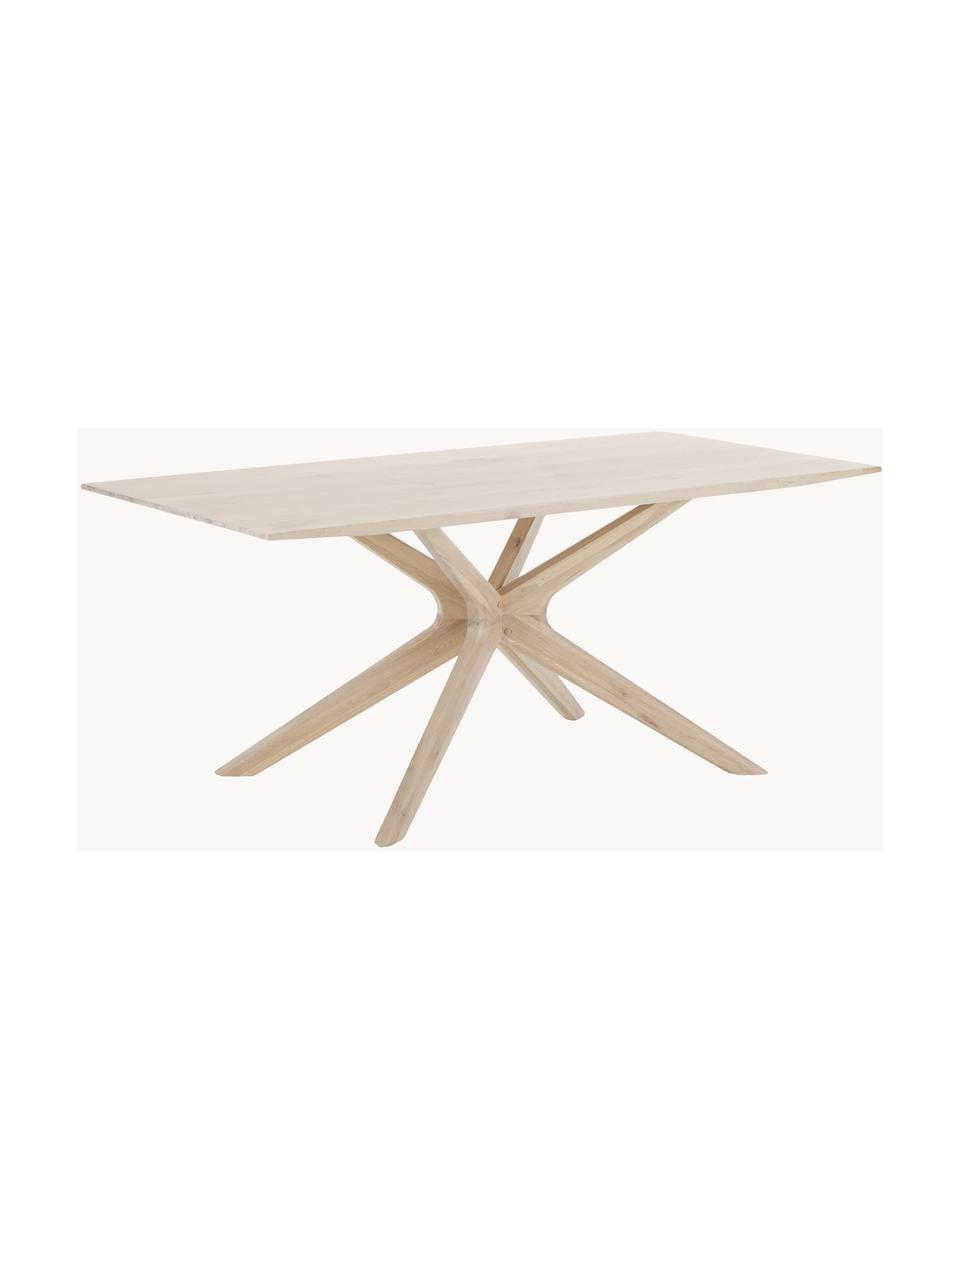 Table en bois de chêne Armande, 180 x 90 cm, Bois de chêne, ciré, blanc laqué, Bois de chêne, larg. 180 x prof. 90 cm